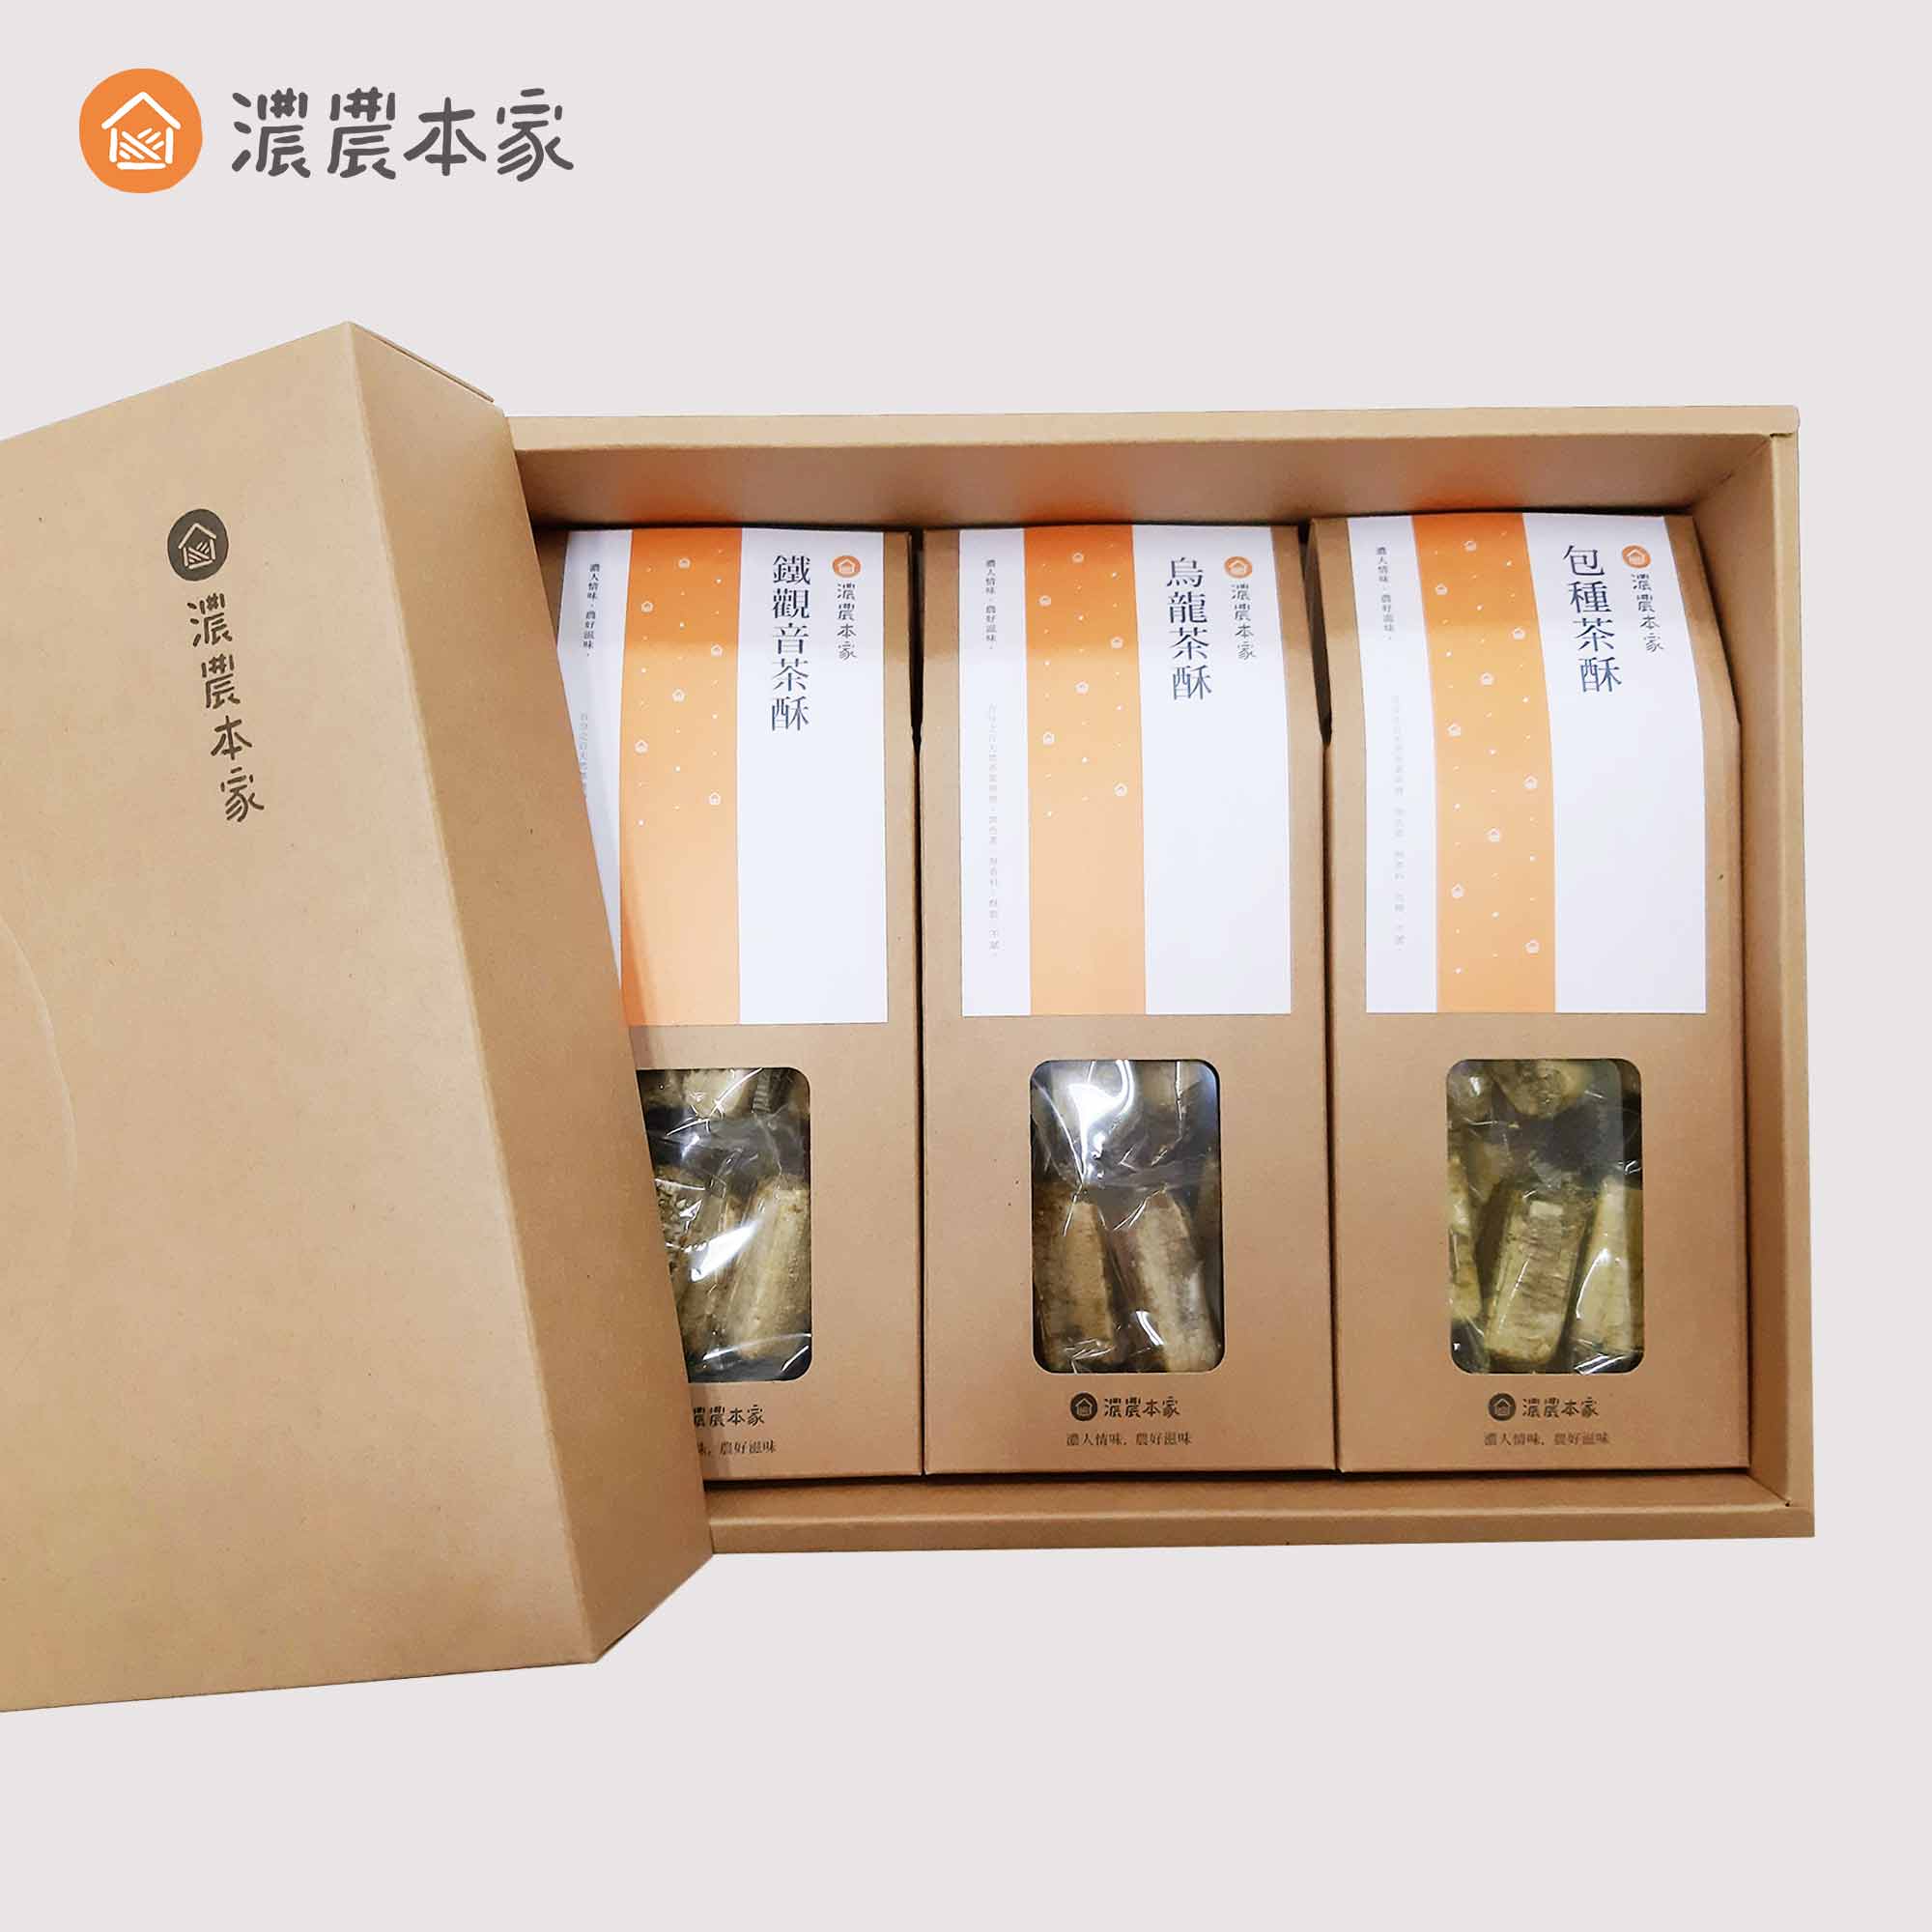 春節送禮推薦人氣過年禮盒排行榜第一名台灣特產茶酥禮盒